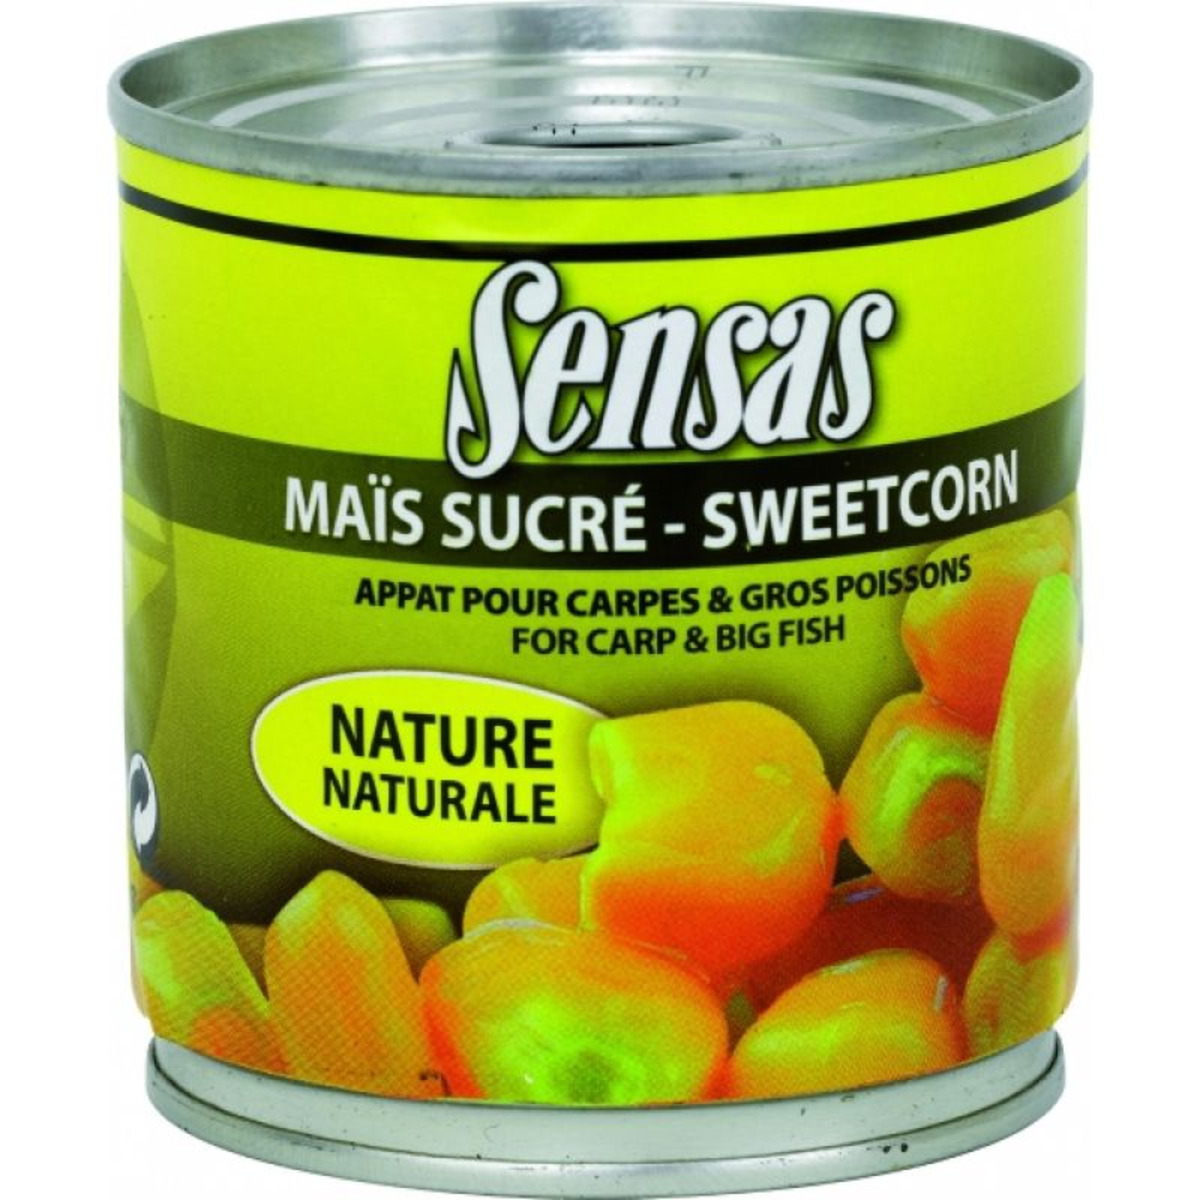 Sensas Sweetcorn - 285 g - Natural